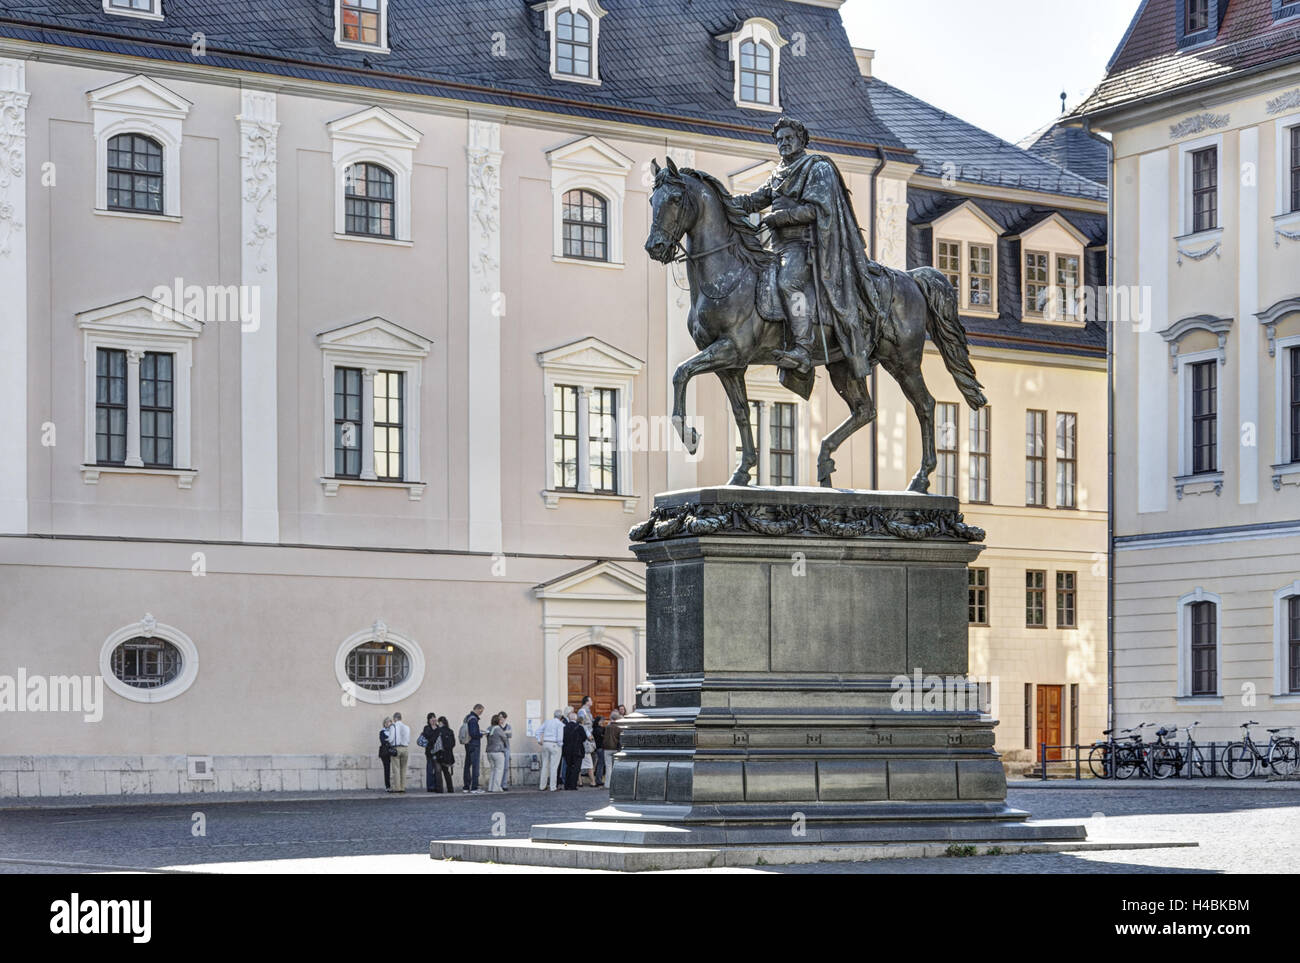 Alemania, Turingia, Weimar, Platz der Republik (cuadrado), el monumento, el Príncipe Carl August, casas, grupo de tour, Foto de stock